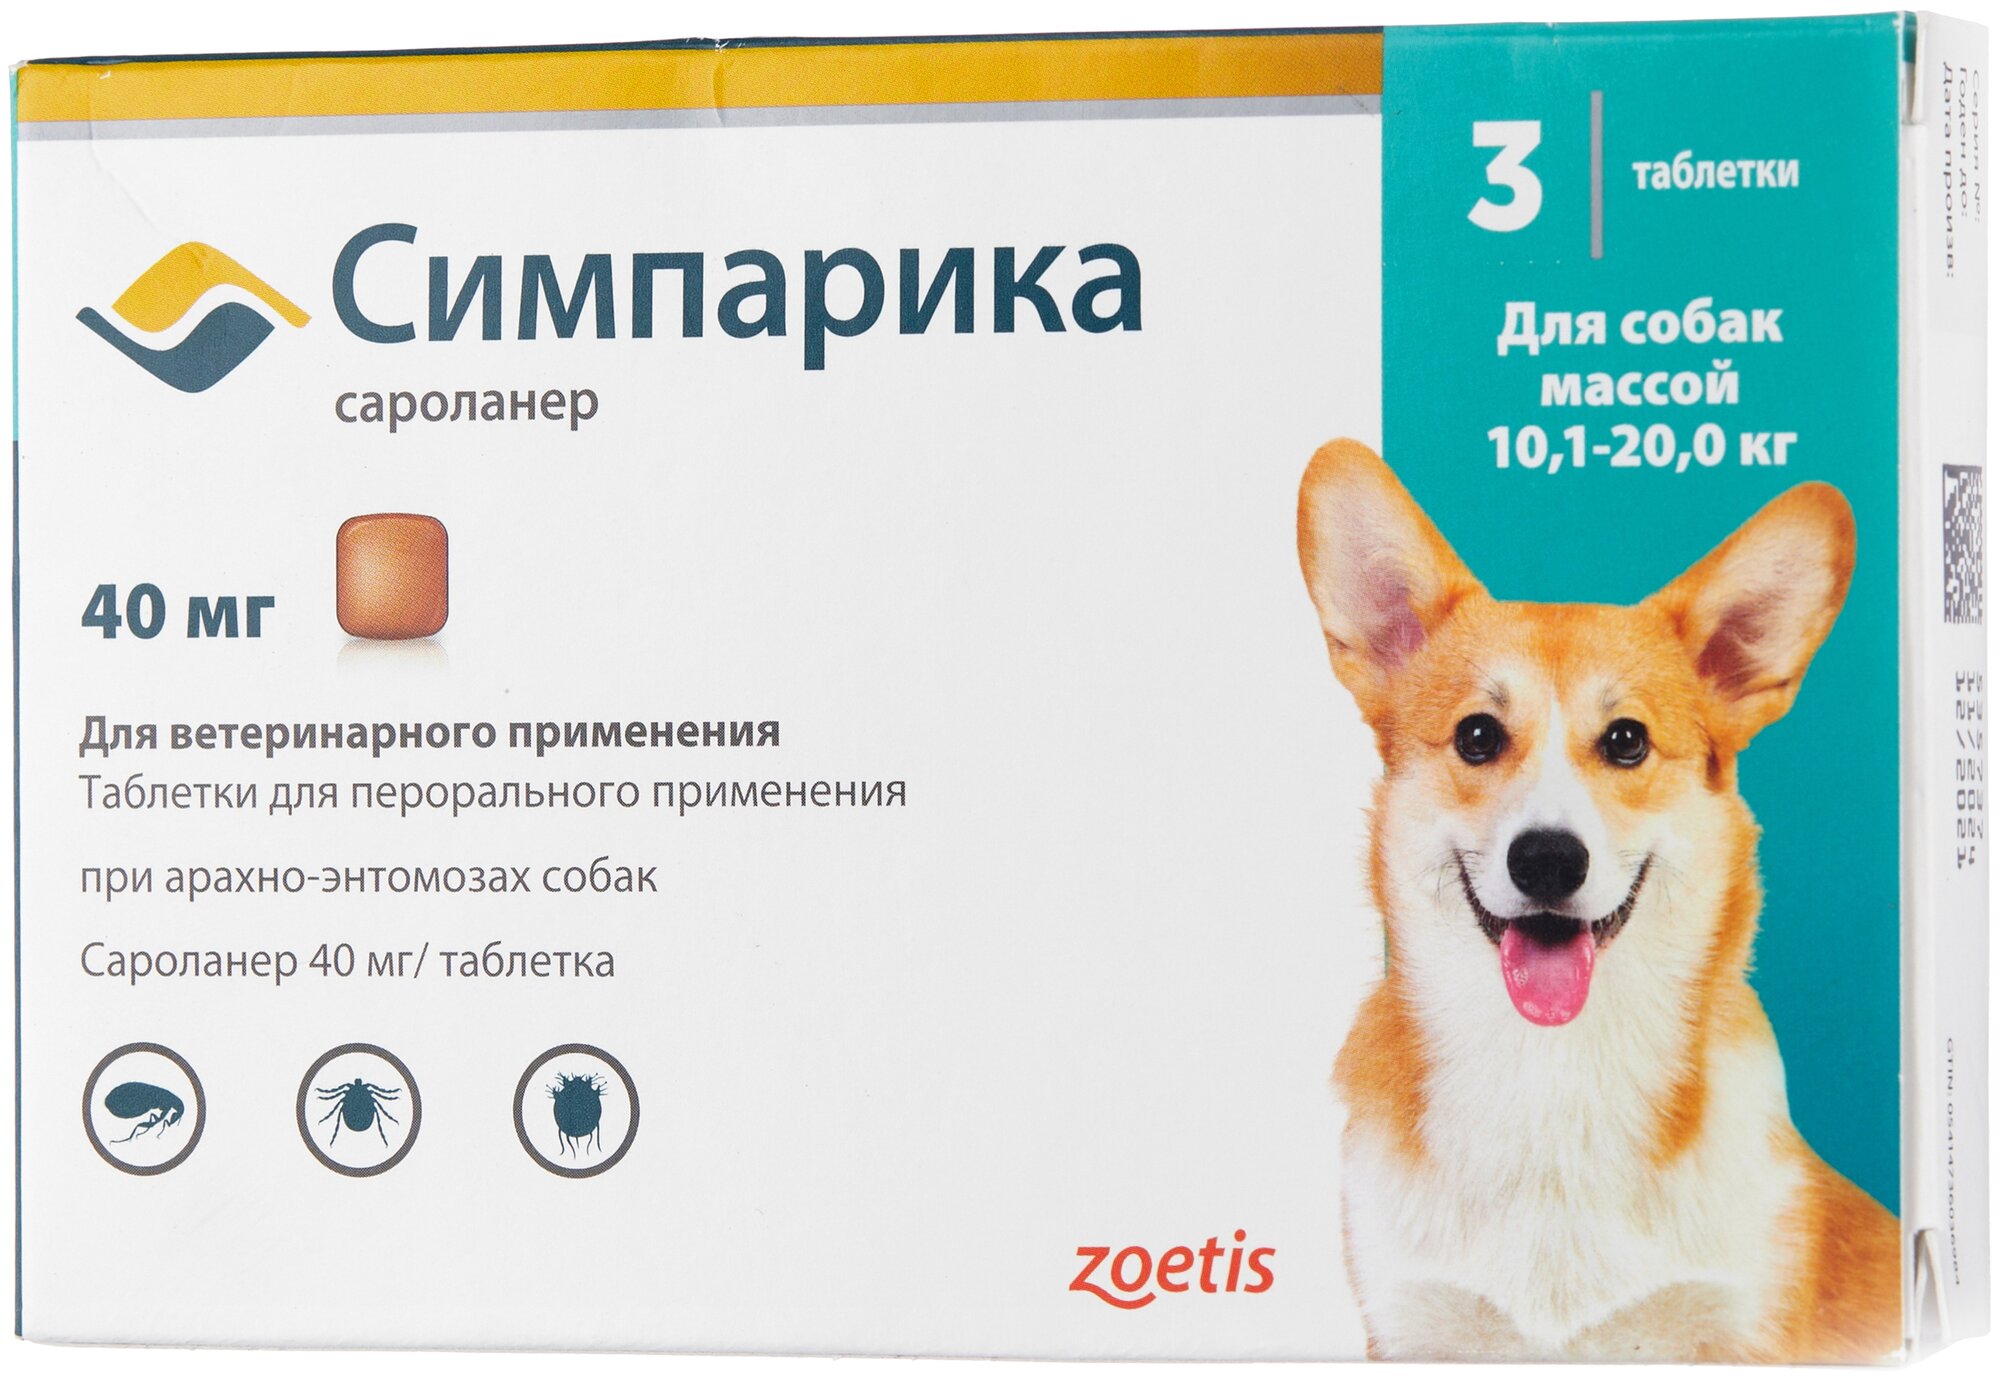 Zoetis  таблетки от блох и клещей Симпарика для собак и щенков массой 10,1-20,0 кг 3 шт. в уп., 1 уп.